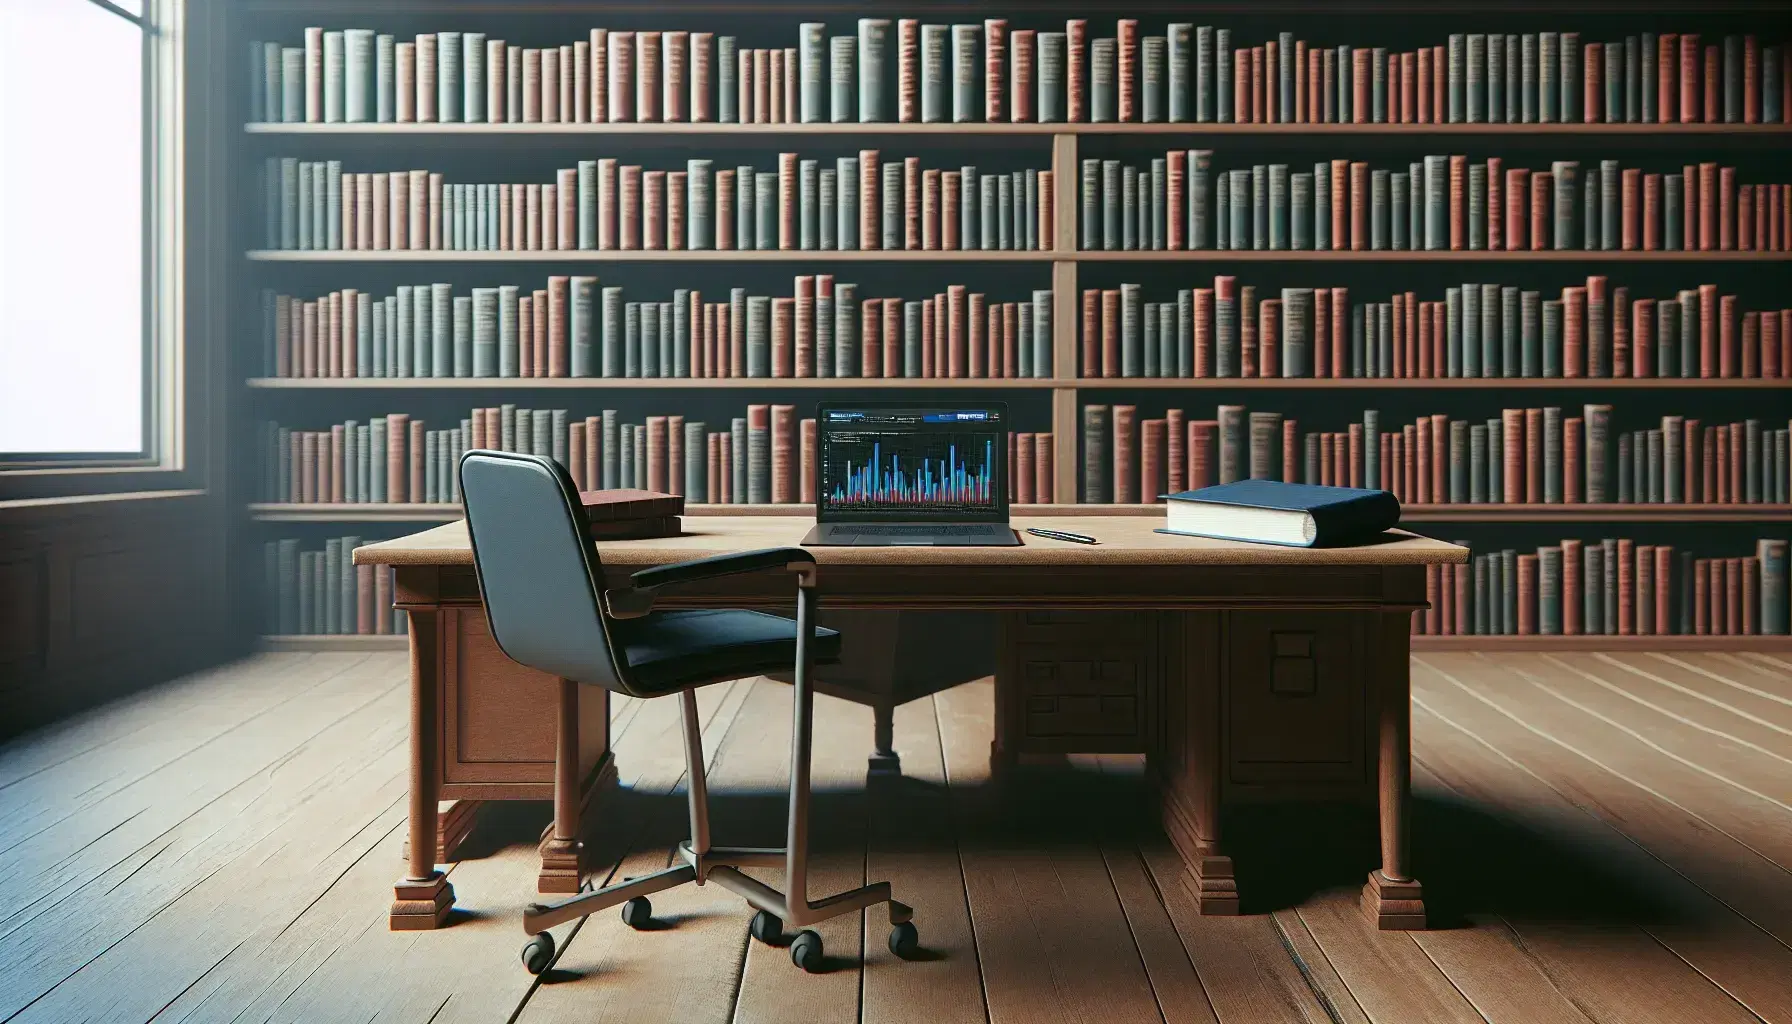 Biblioteca tranquila con estantes de libros, mesa de madera con laptop mostrando gráficos y cuaderno con bolígrafo, silla de oficina negra y luz suave.